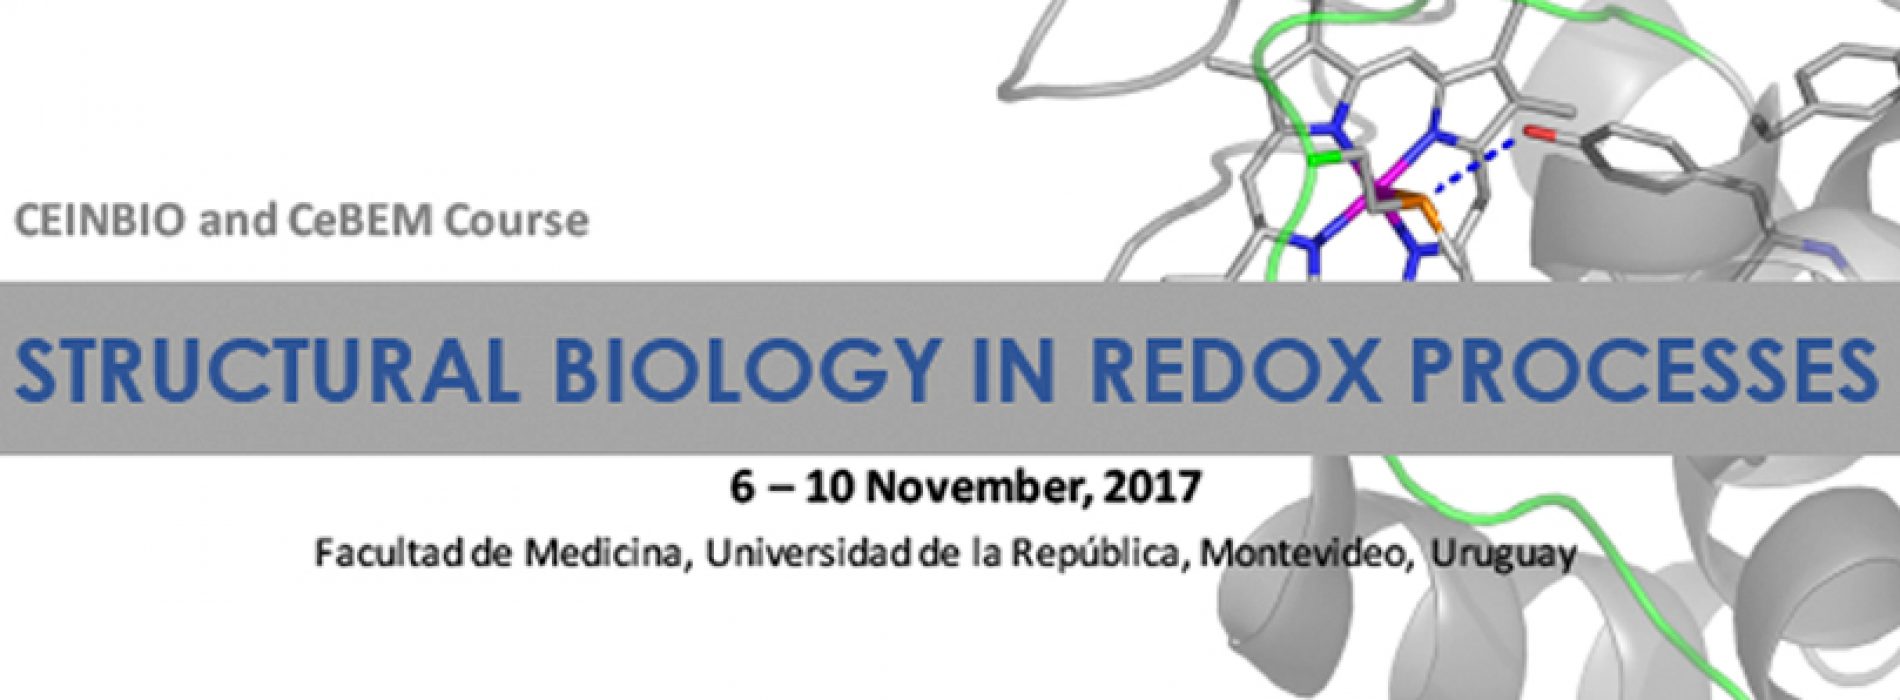 Curso CeBEM en Biología Estructural de Procesos Redox, Montevideo, Nov 2017